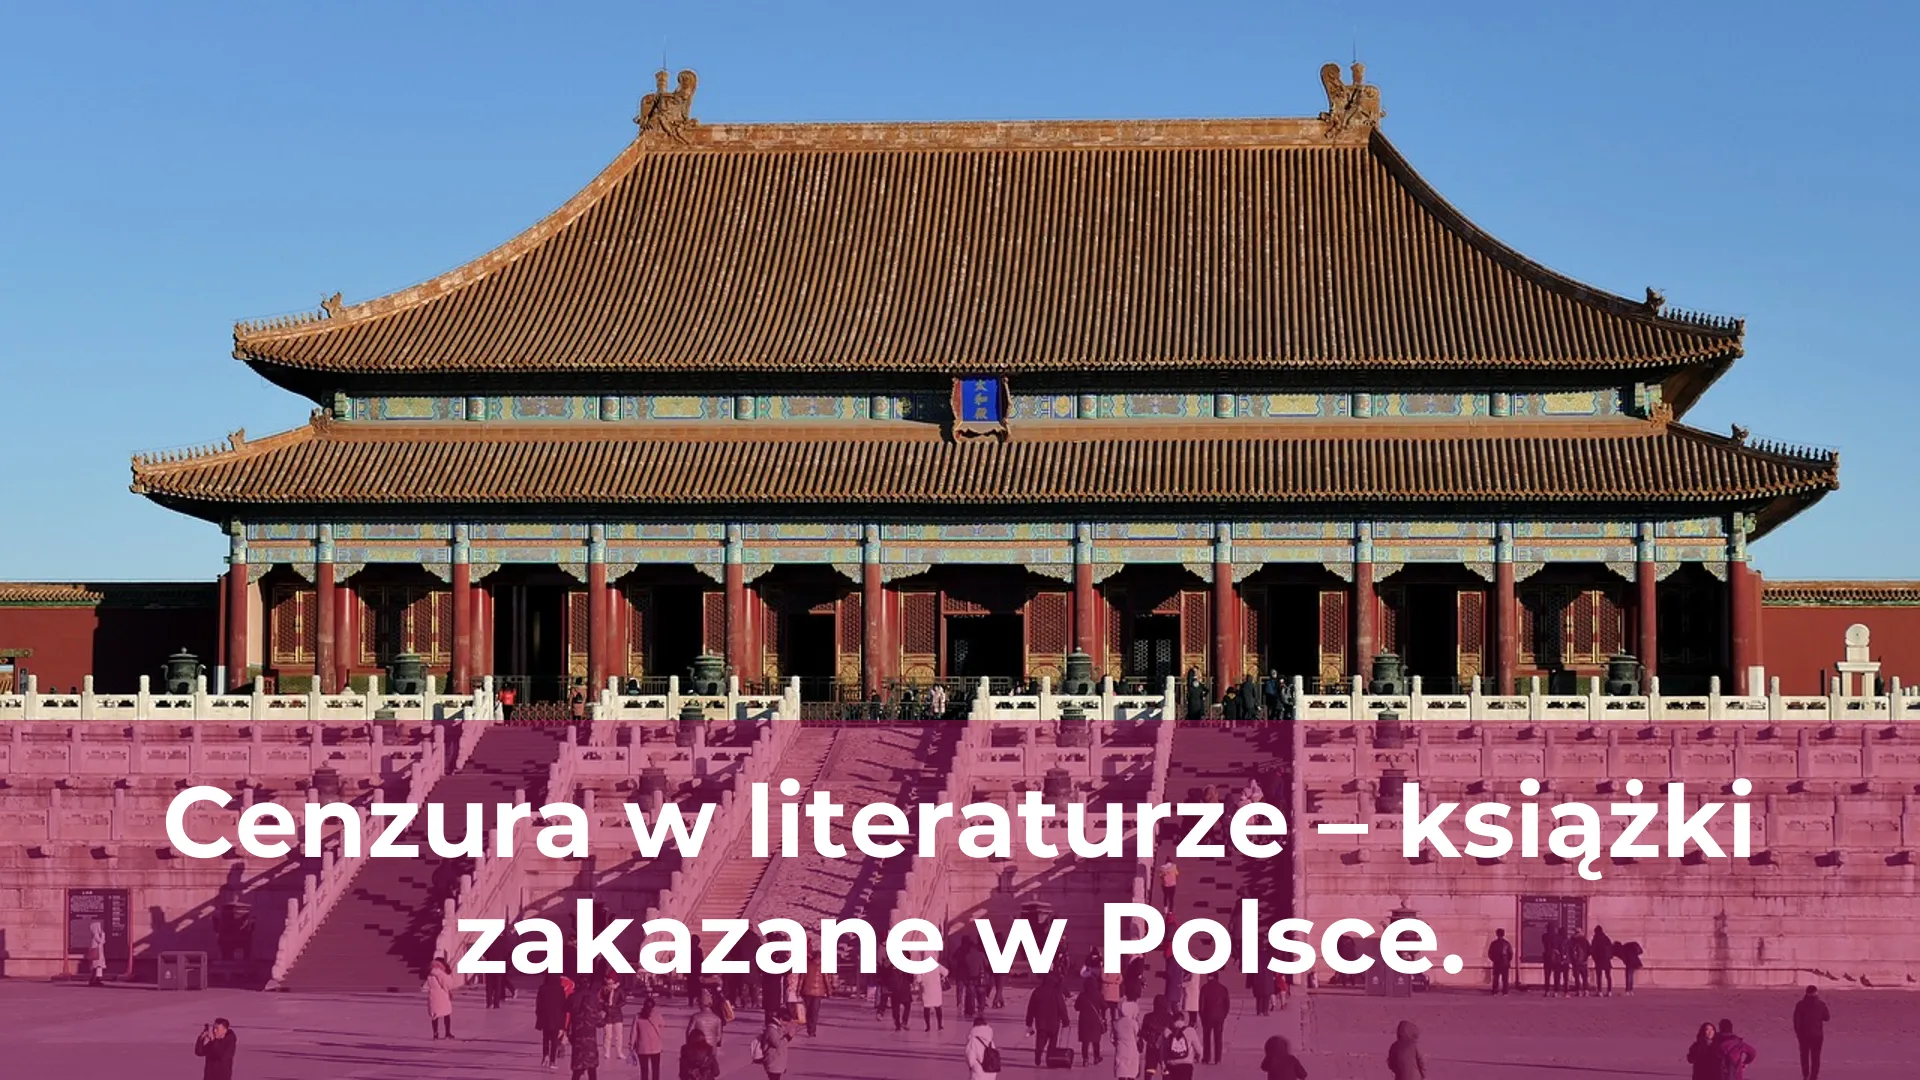 Cenzura w literaturze książki zakazane w polsce